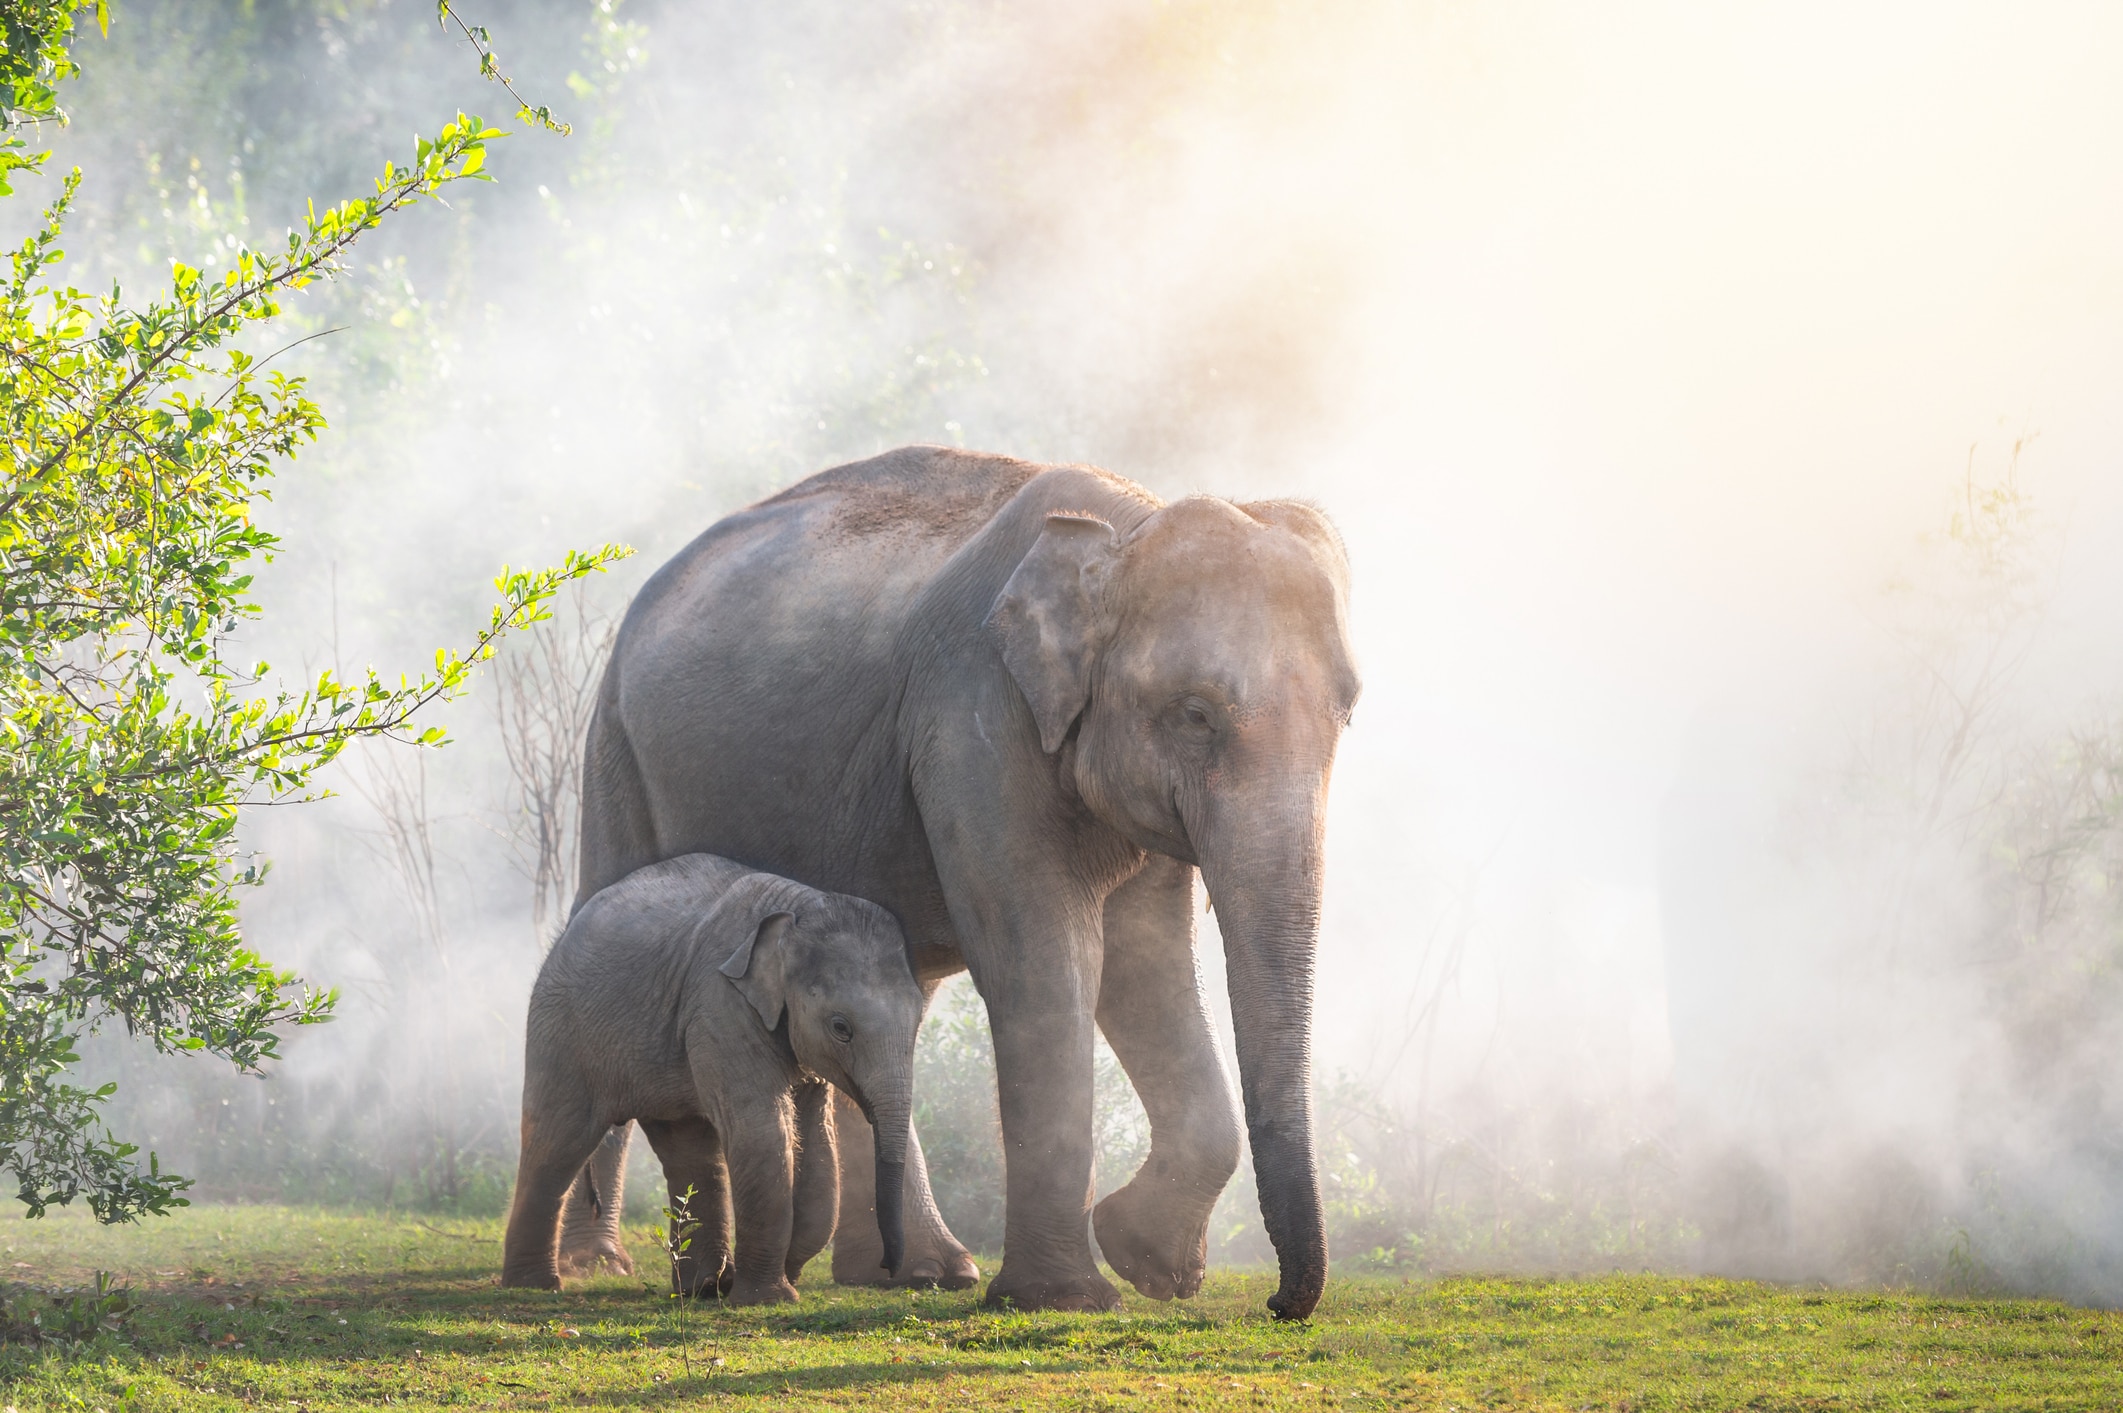 An elephant and an elephant calf walking through fog